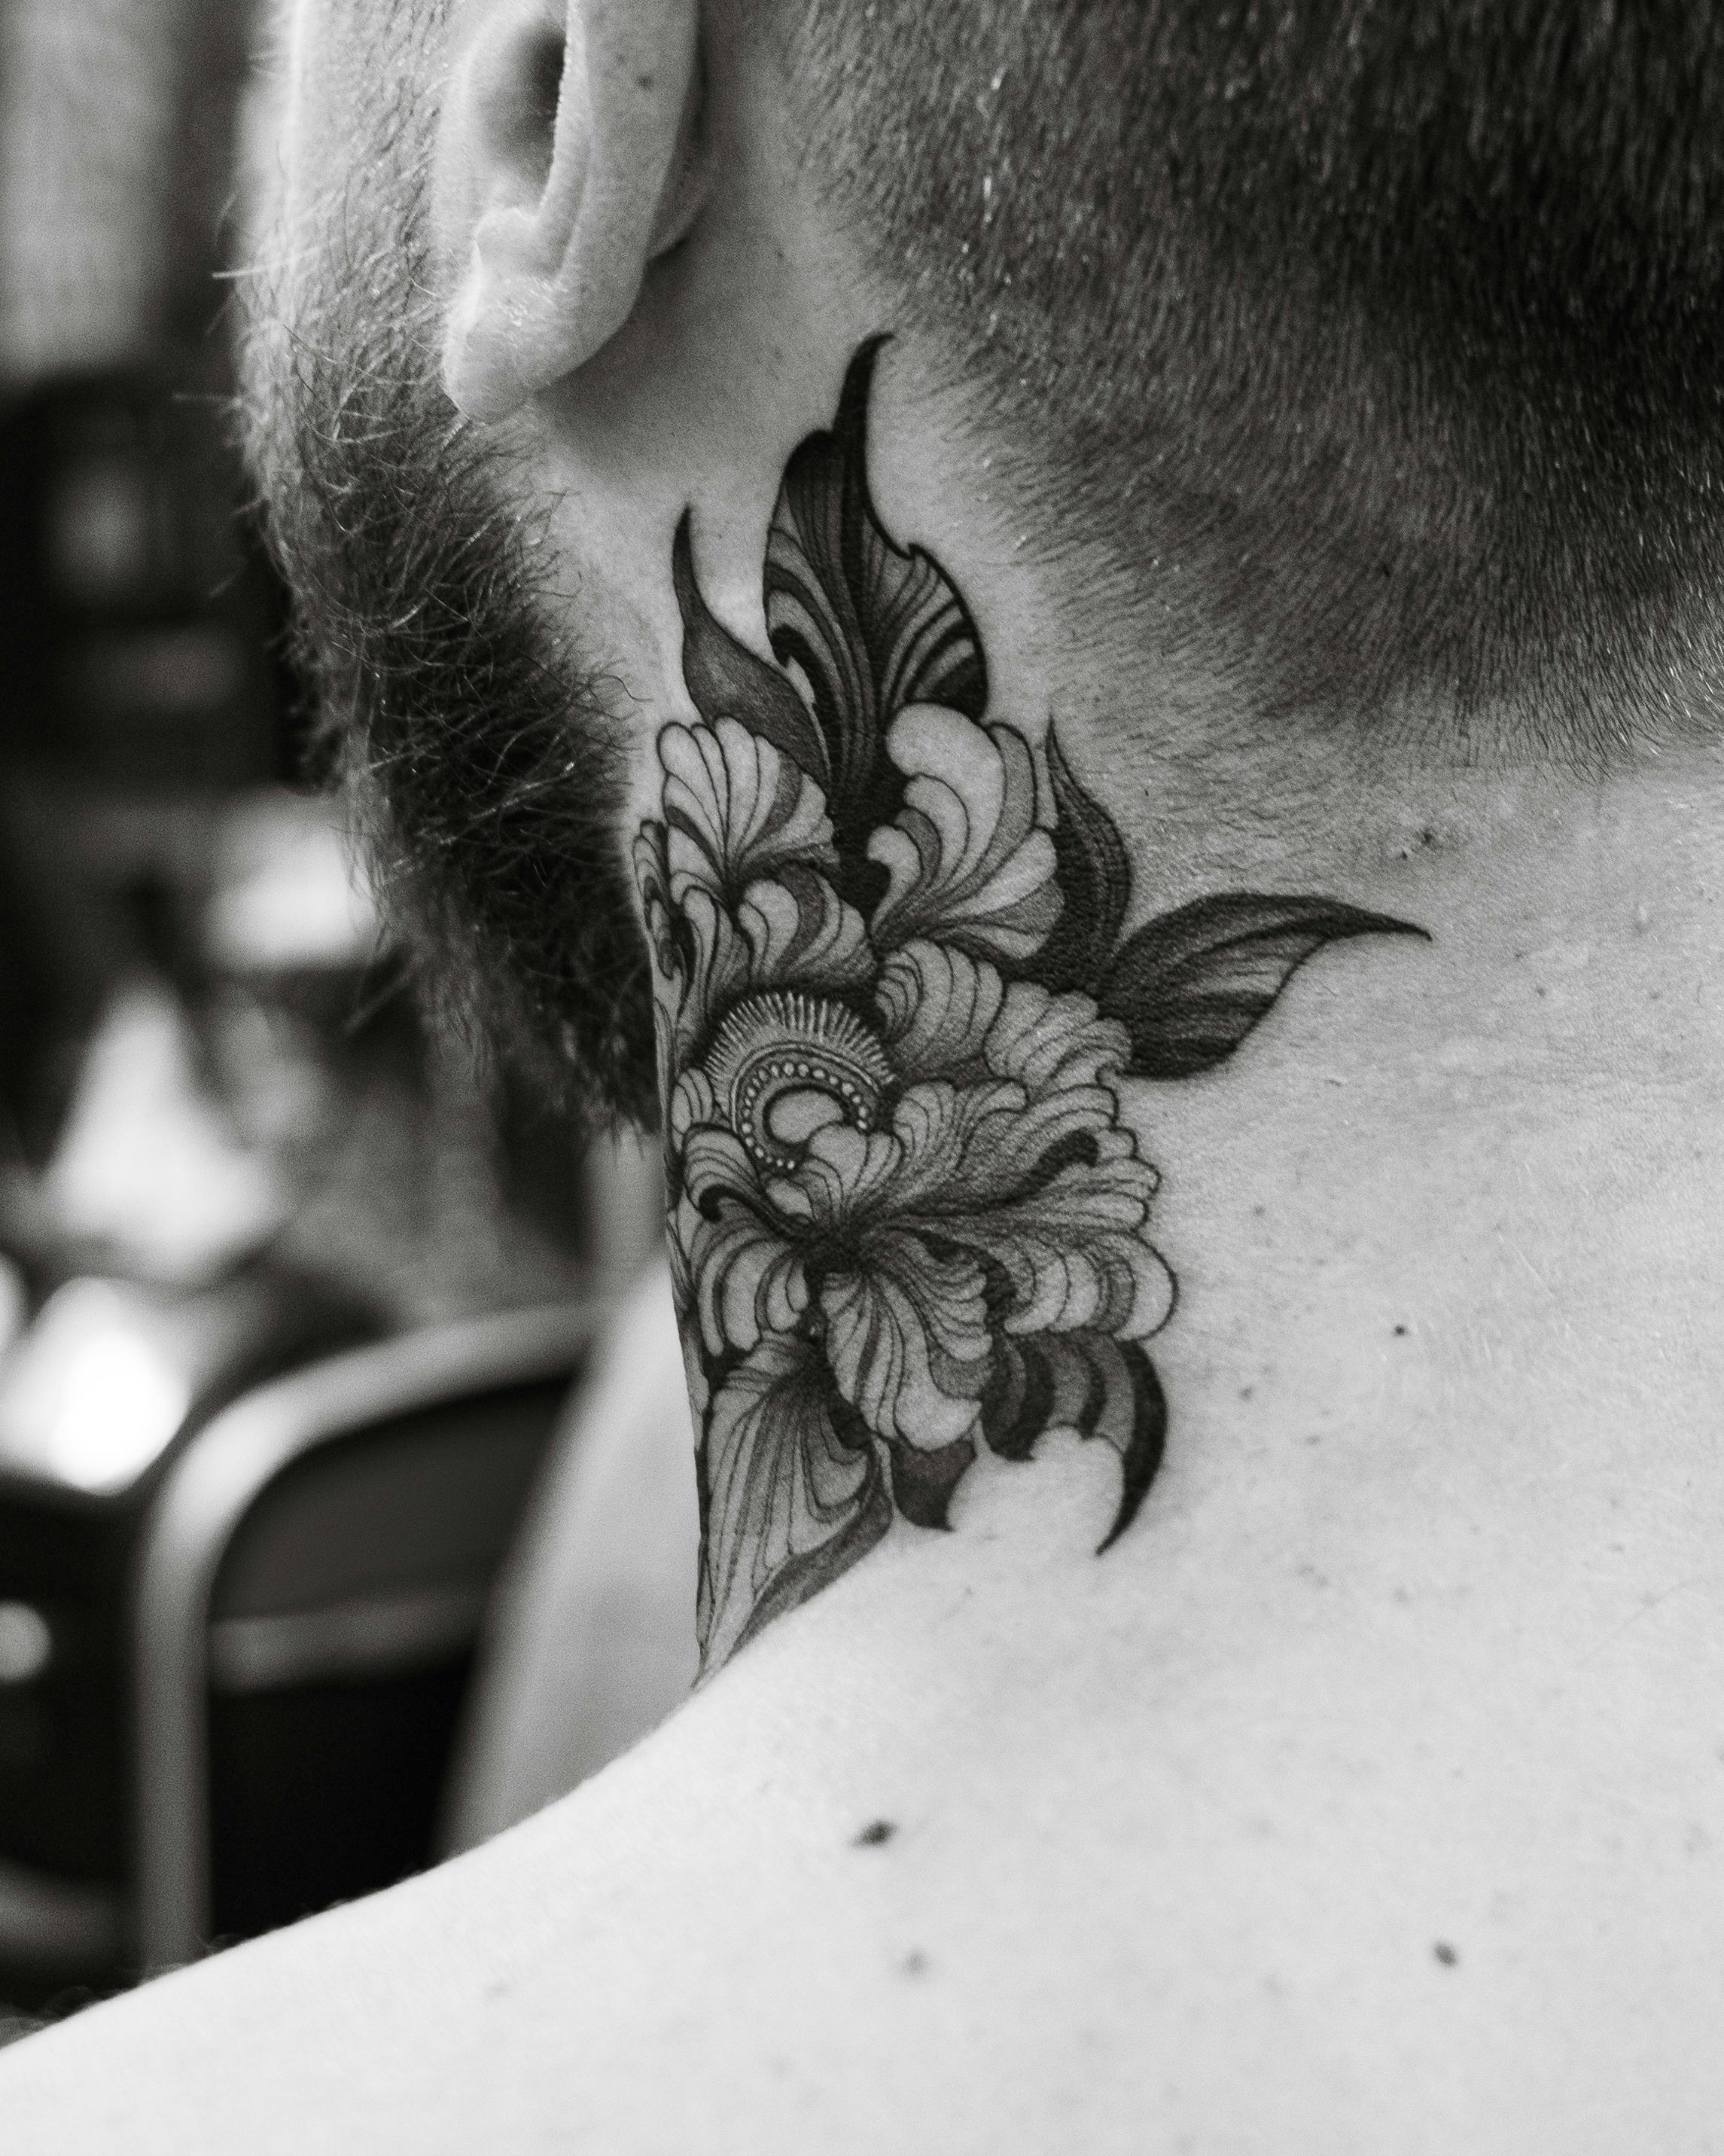 Lotus Flower Throat Tattoo Added :) - Nightmare Tattoo Studio | Facebook